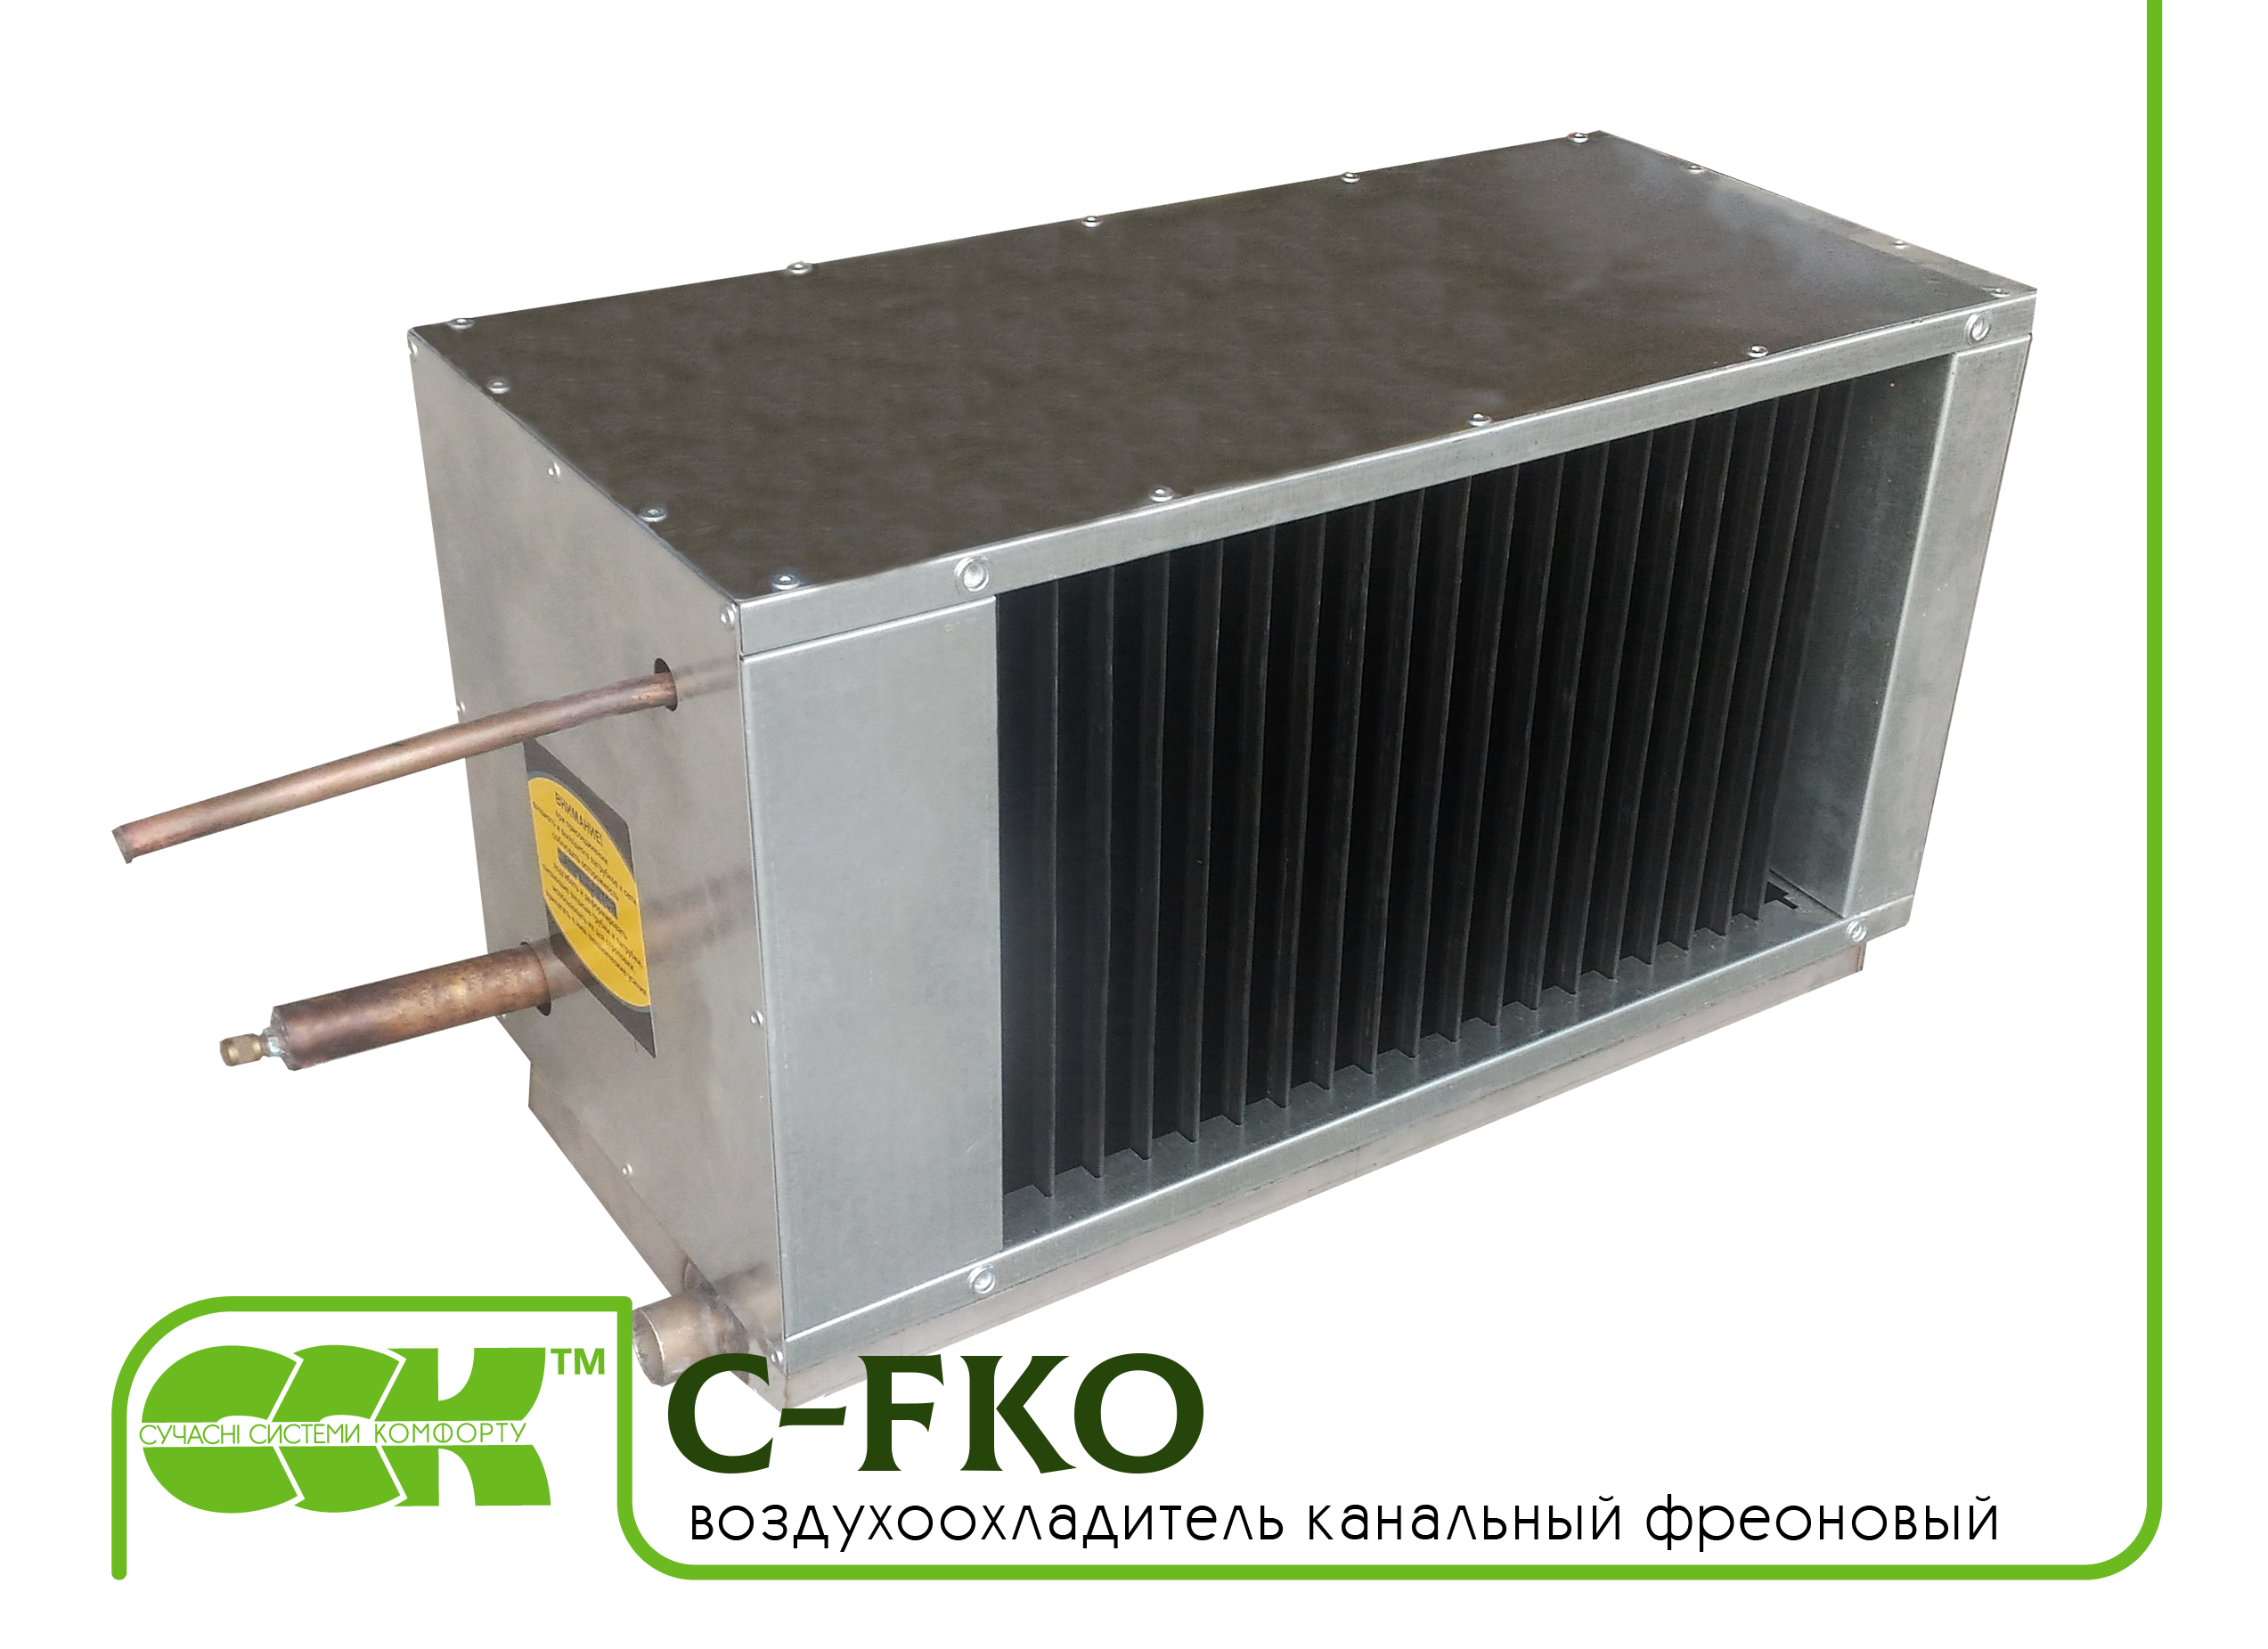 Фреоновый воздухоохладитель канальный C-FKO-70-40